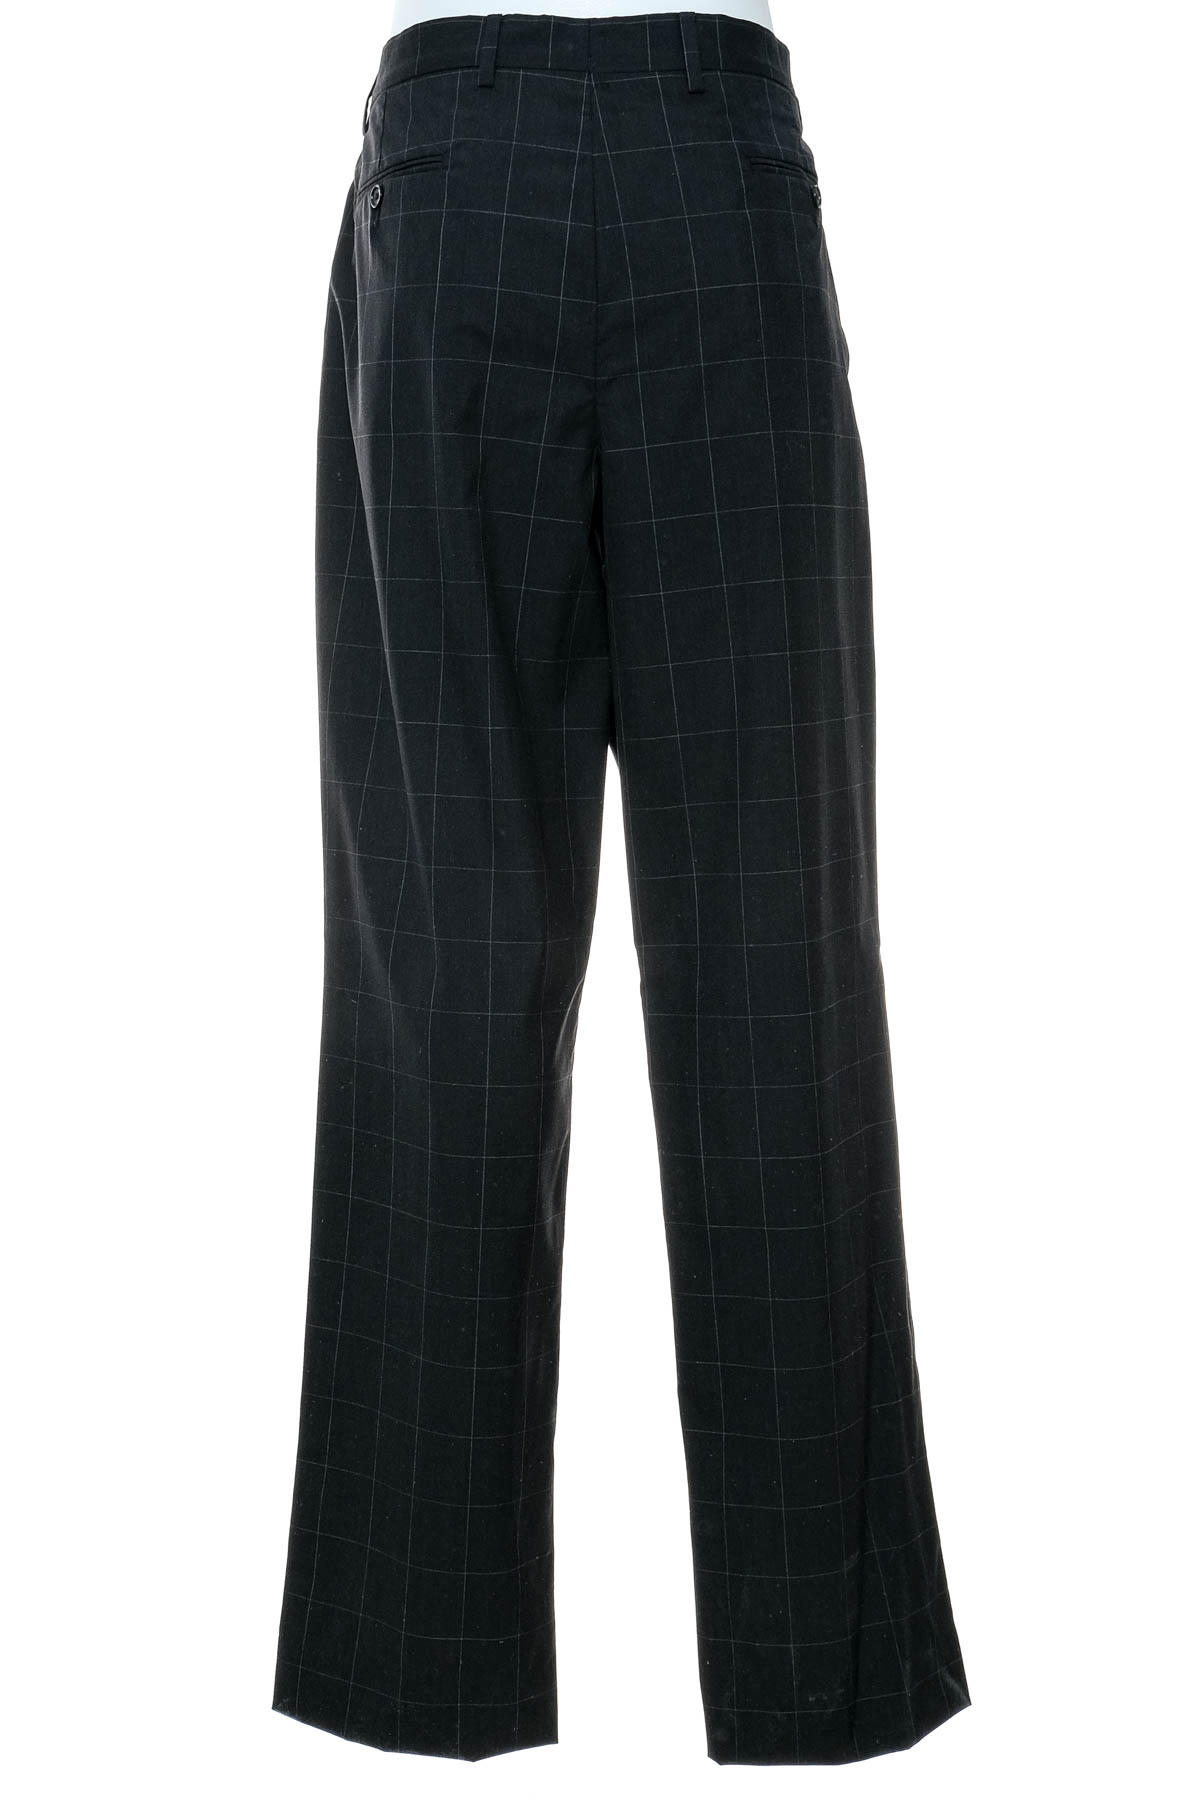 Pantalon pentru bărbați - Paul Fredrick - 1